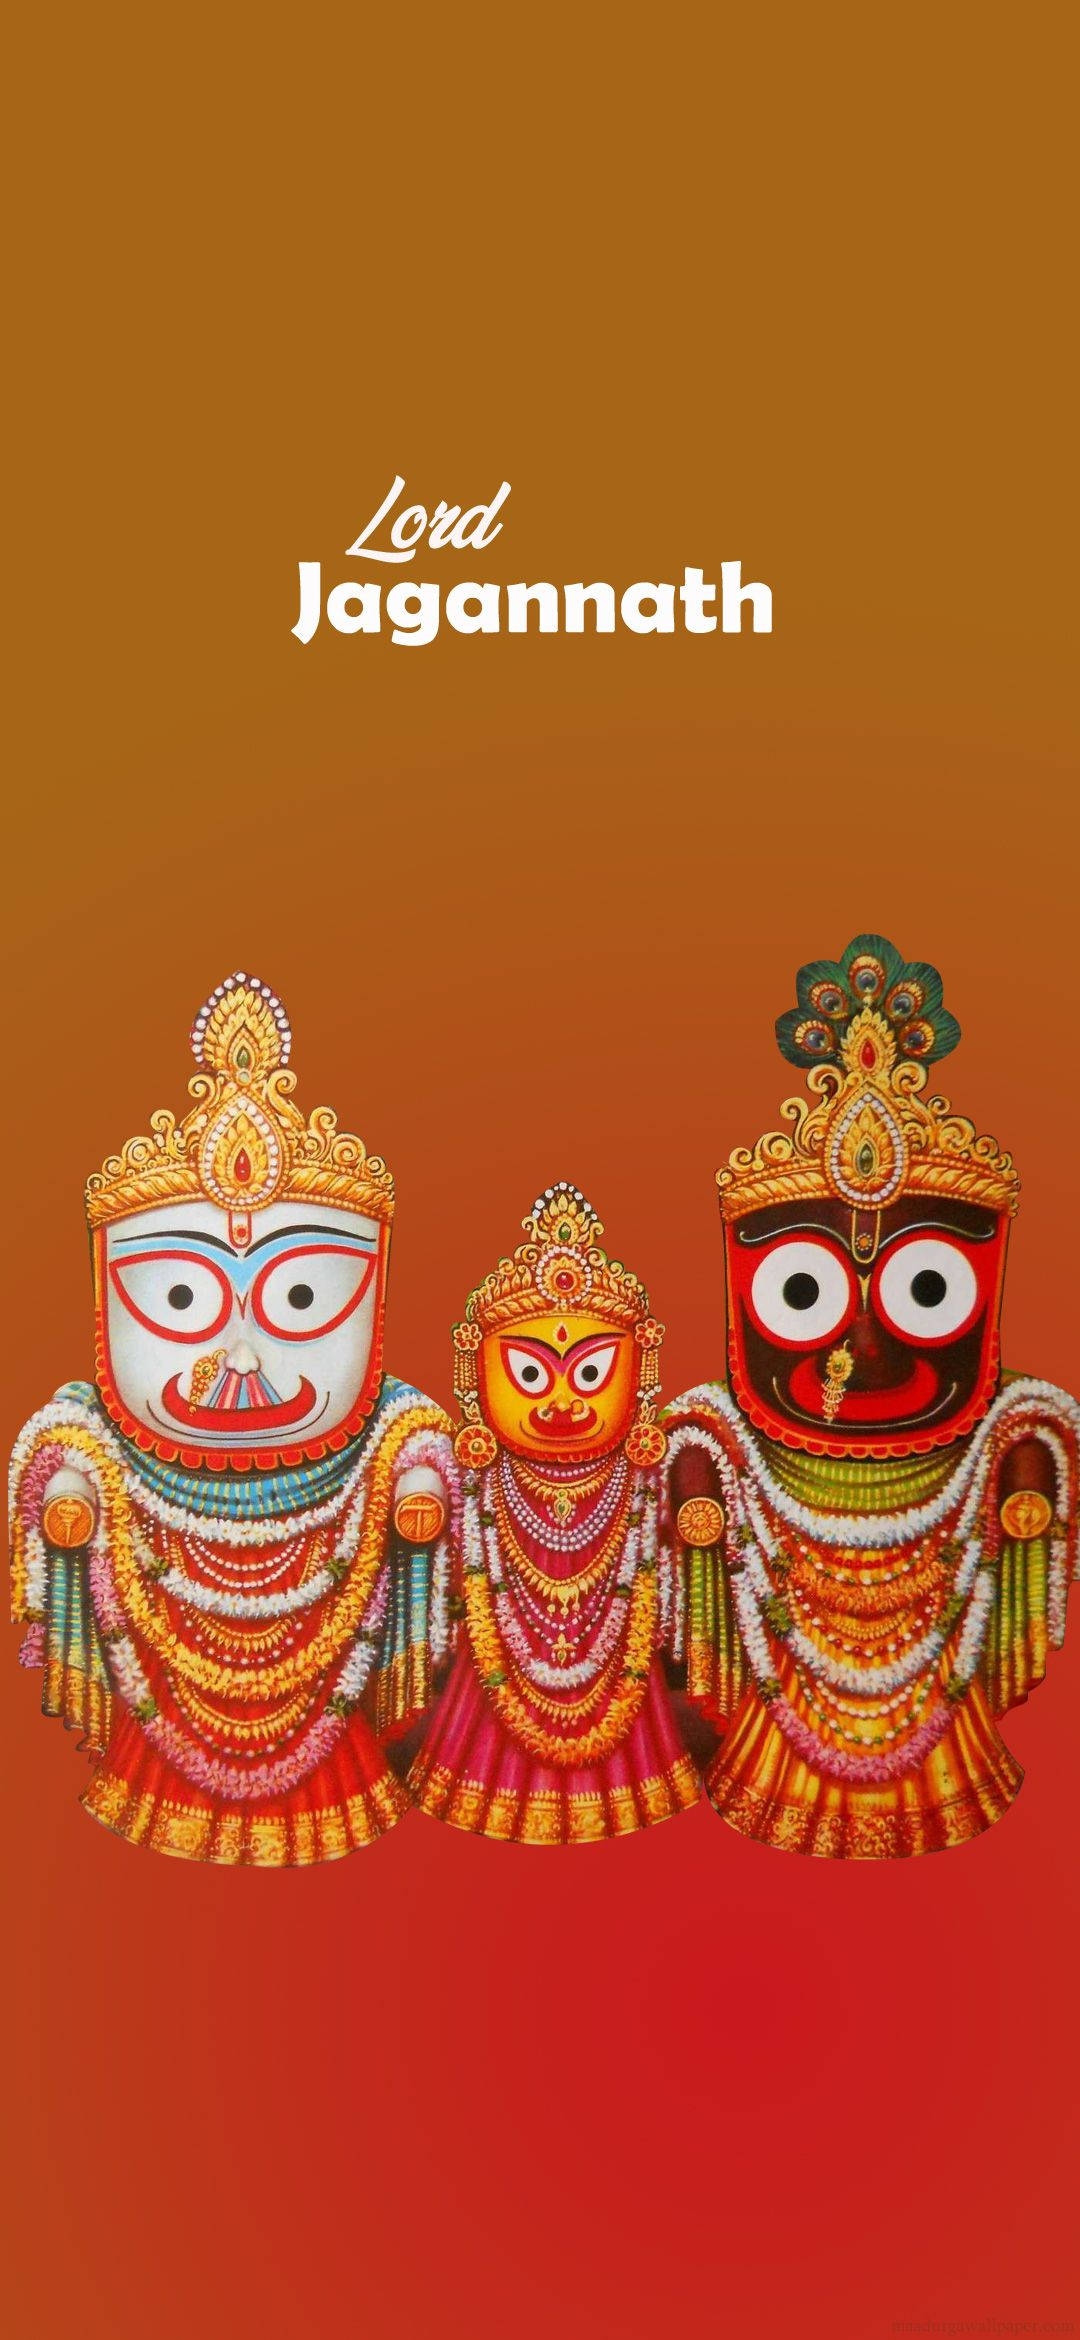 Lord Jagannath - Devotional